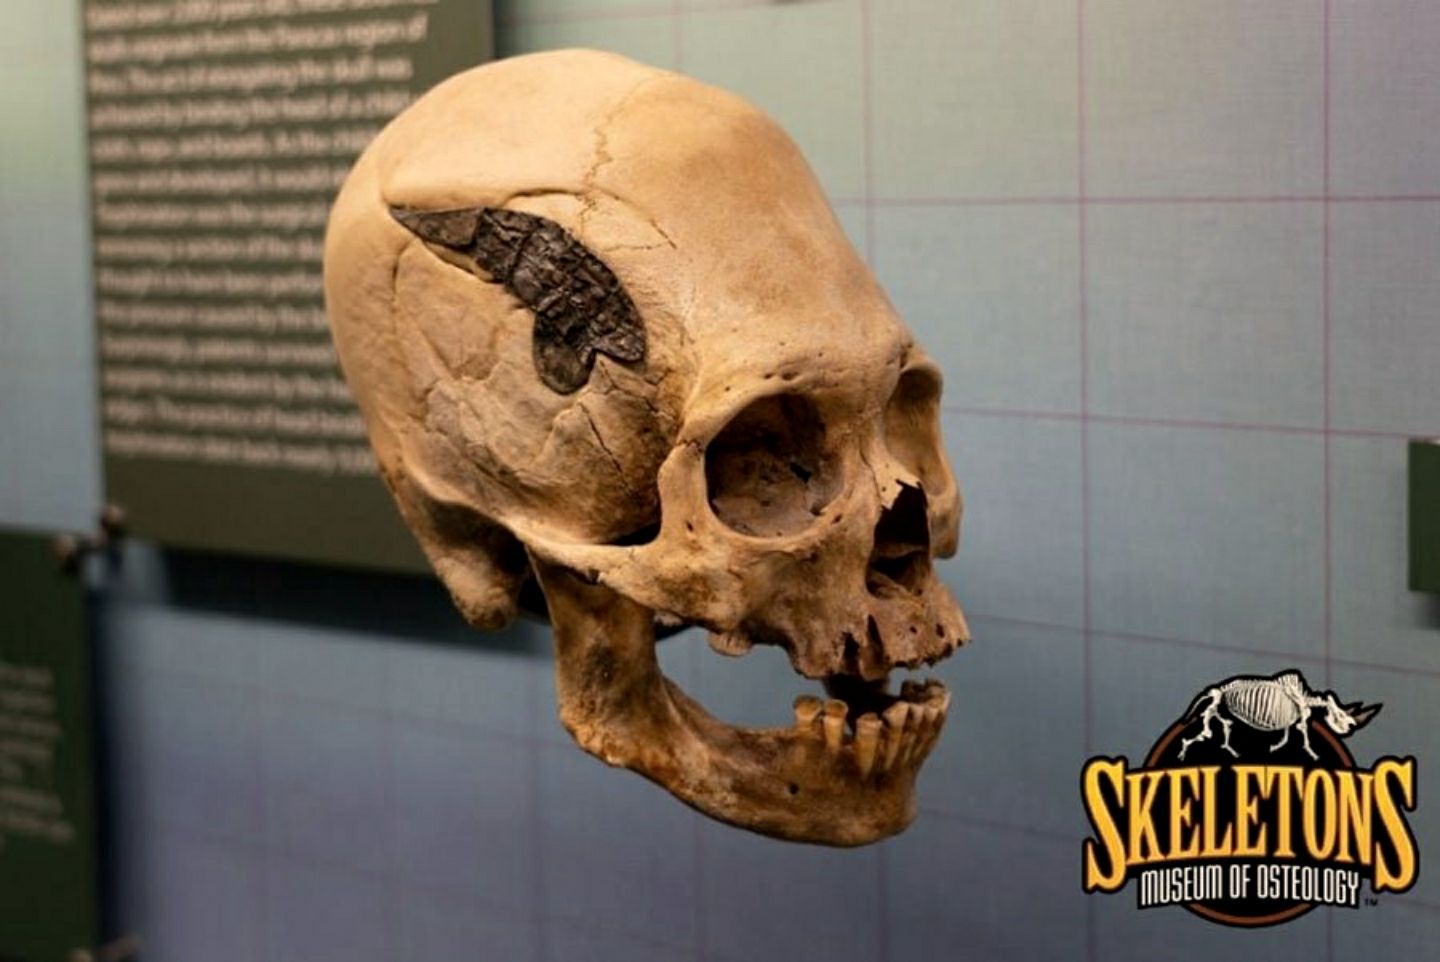 Hộp sọ đến từ Peru này được cấy ghép bằng kim loại. Nếu nó là xác thực thì nó sẽ là một phát hiện có khả năng độc nhất vô nhị từ dãy Andes cổ đại.